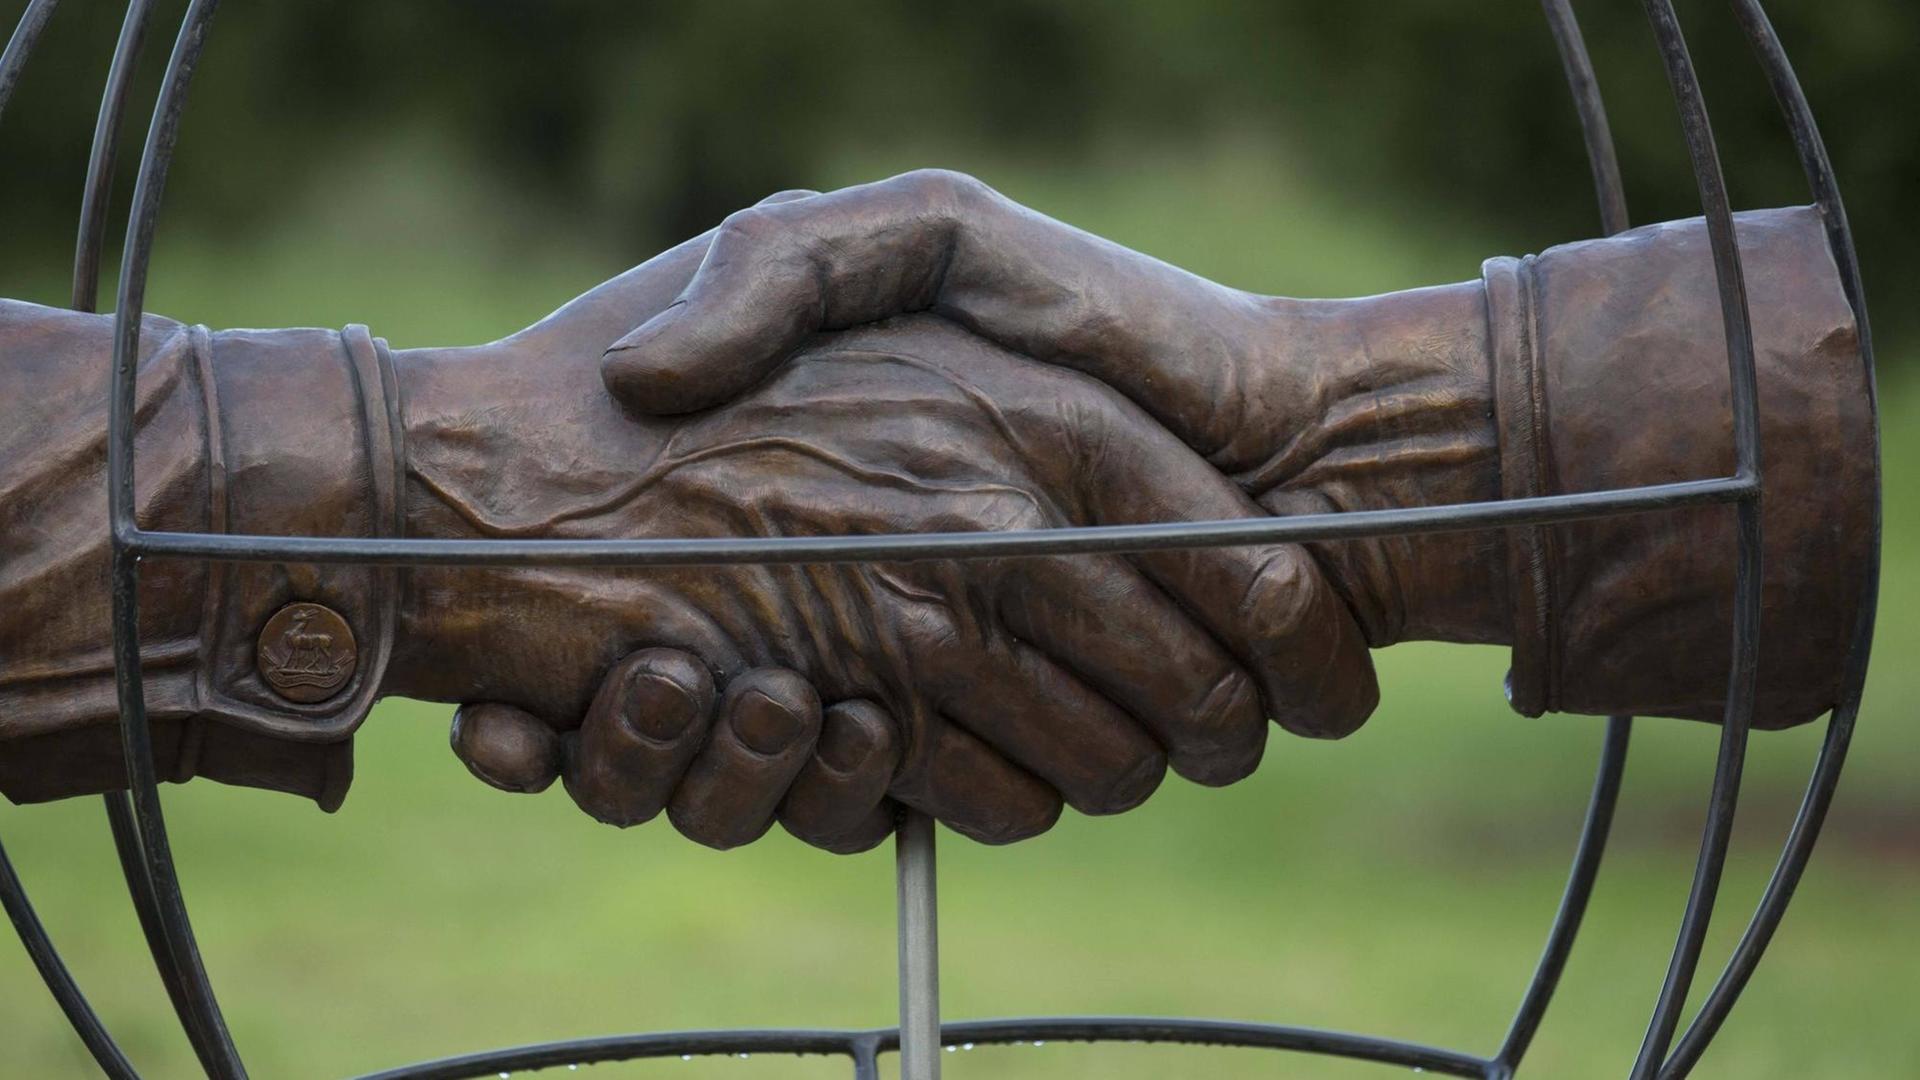 Ein Denkmal in Erinnerung an den Weihnachtsfrieden 2014 - ein Händedrück in Nahaufnahme